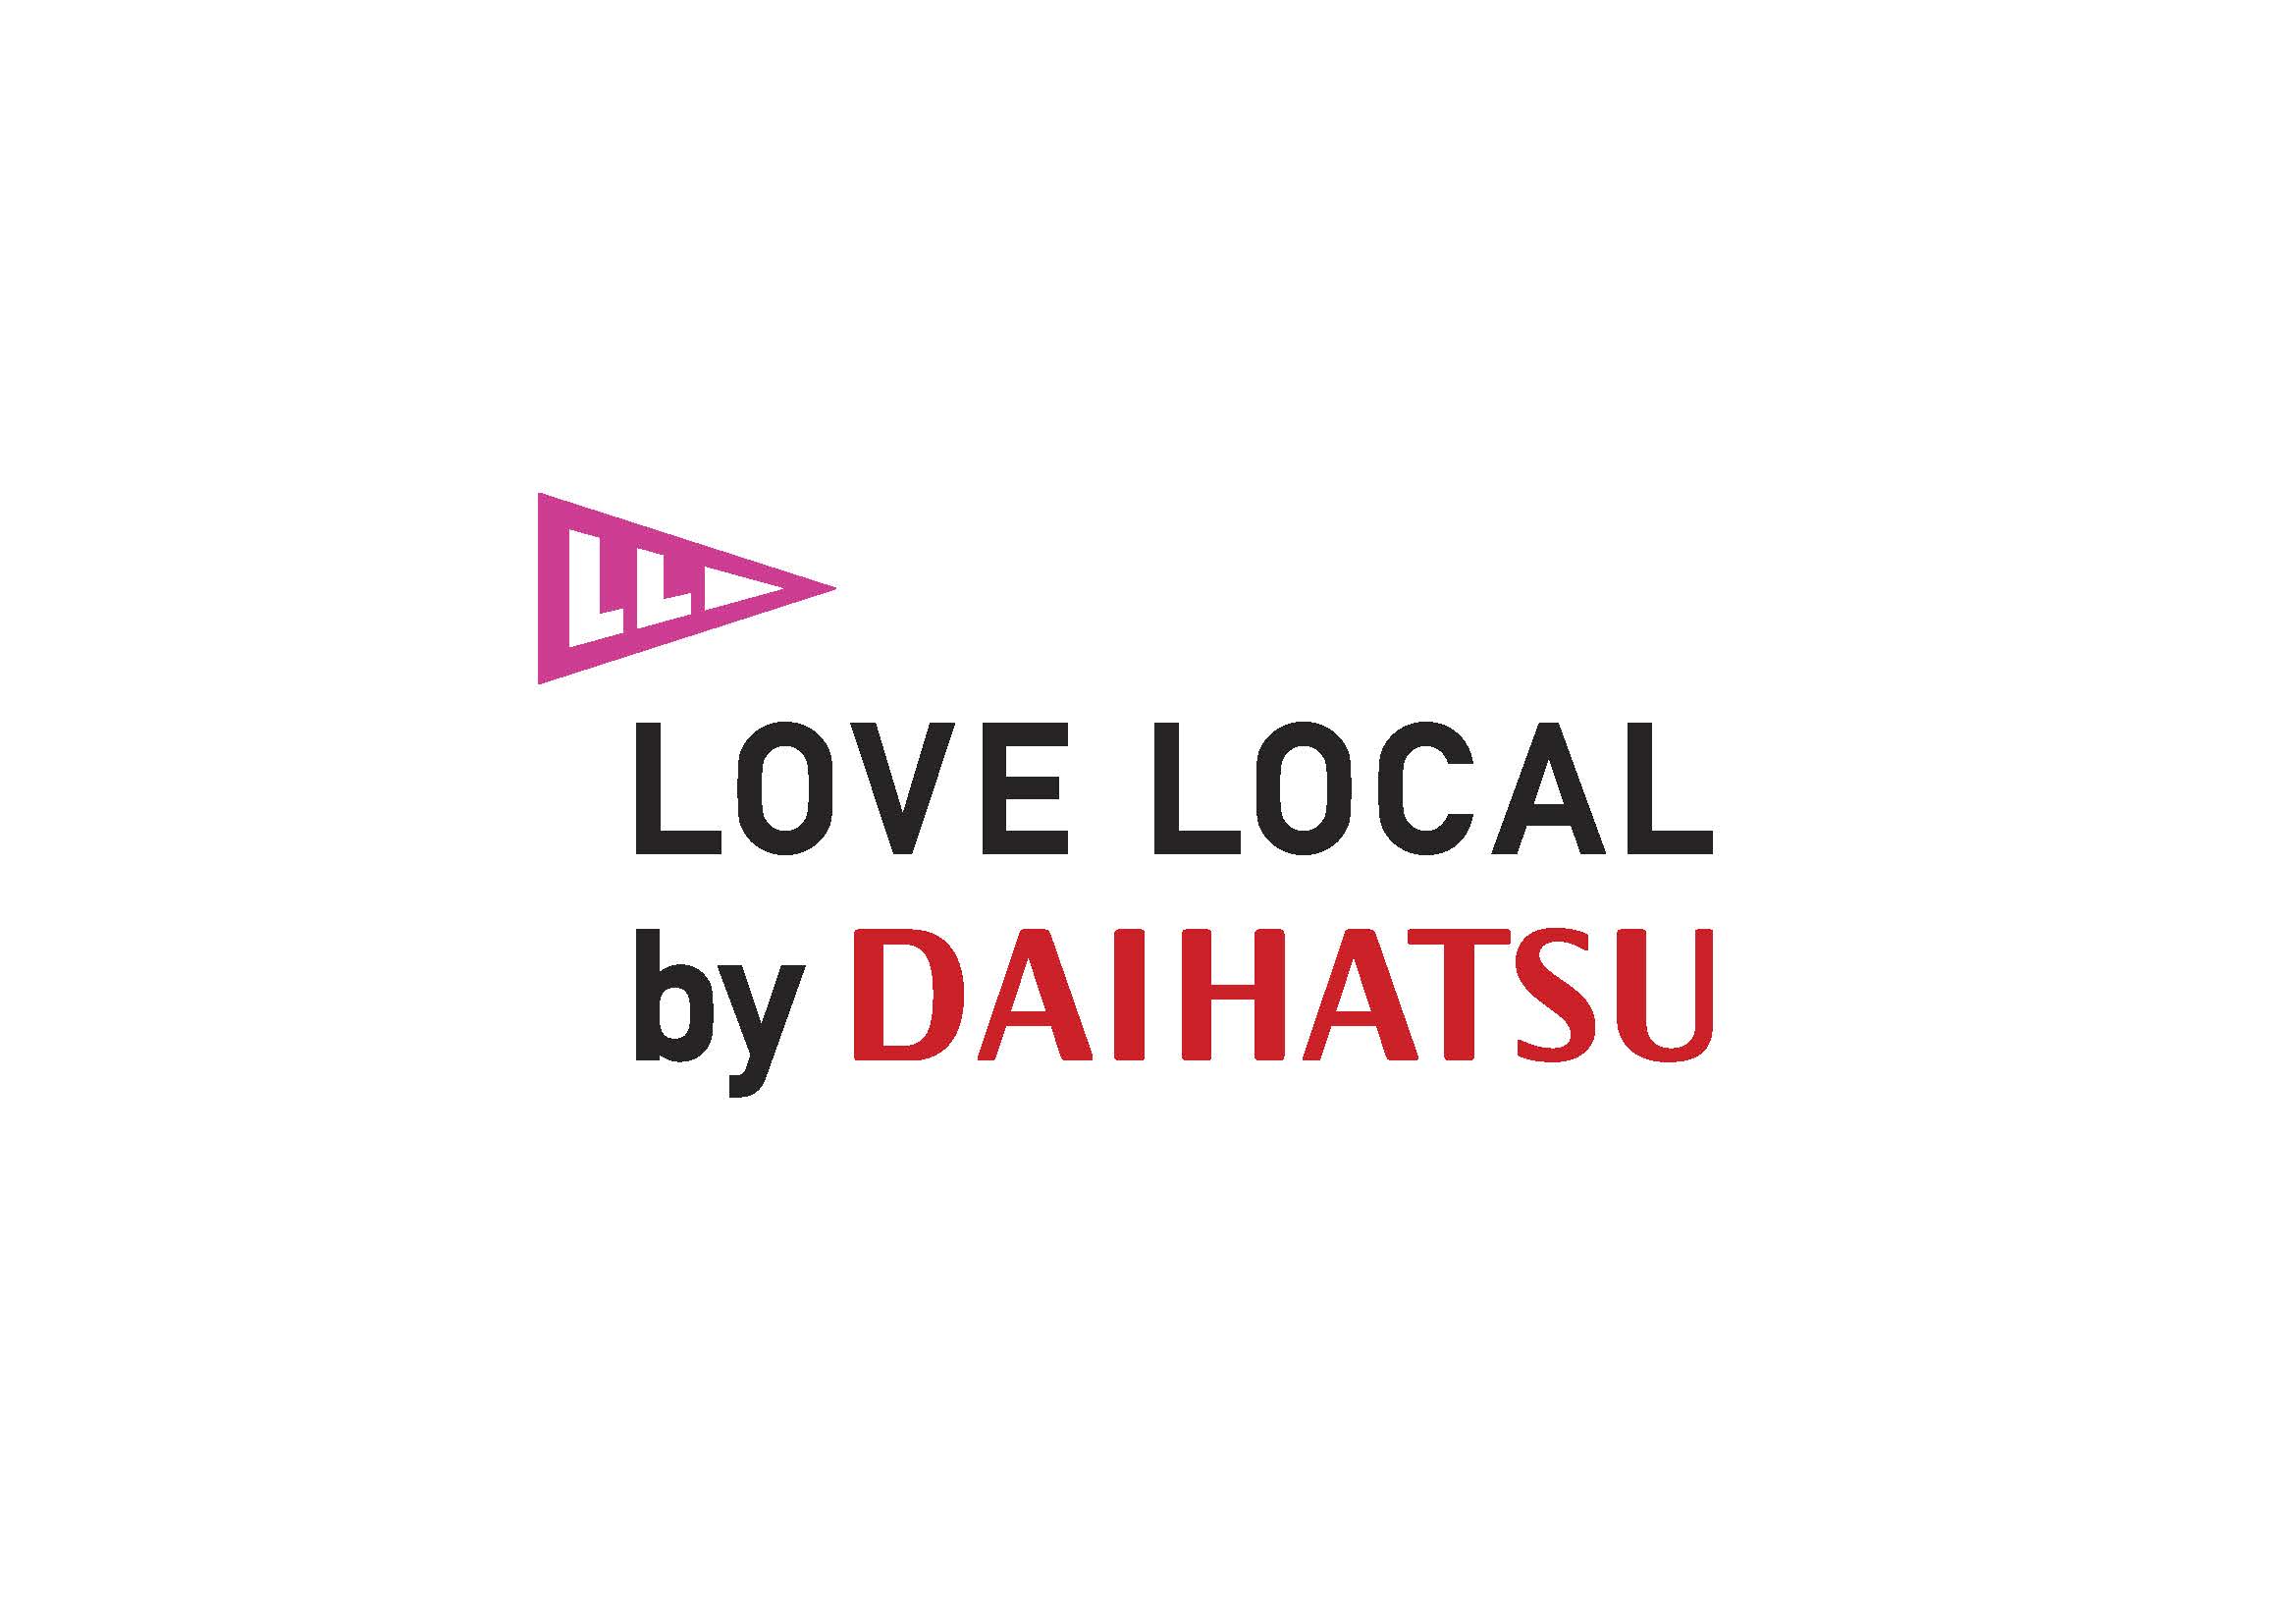 ダイハツ、LOVE LOCALイベントの2018年度概要を発表